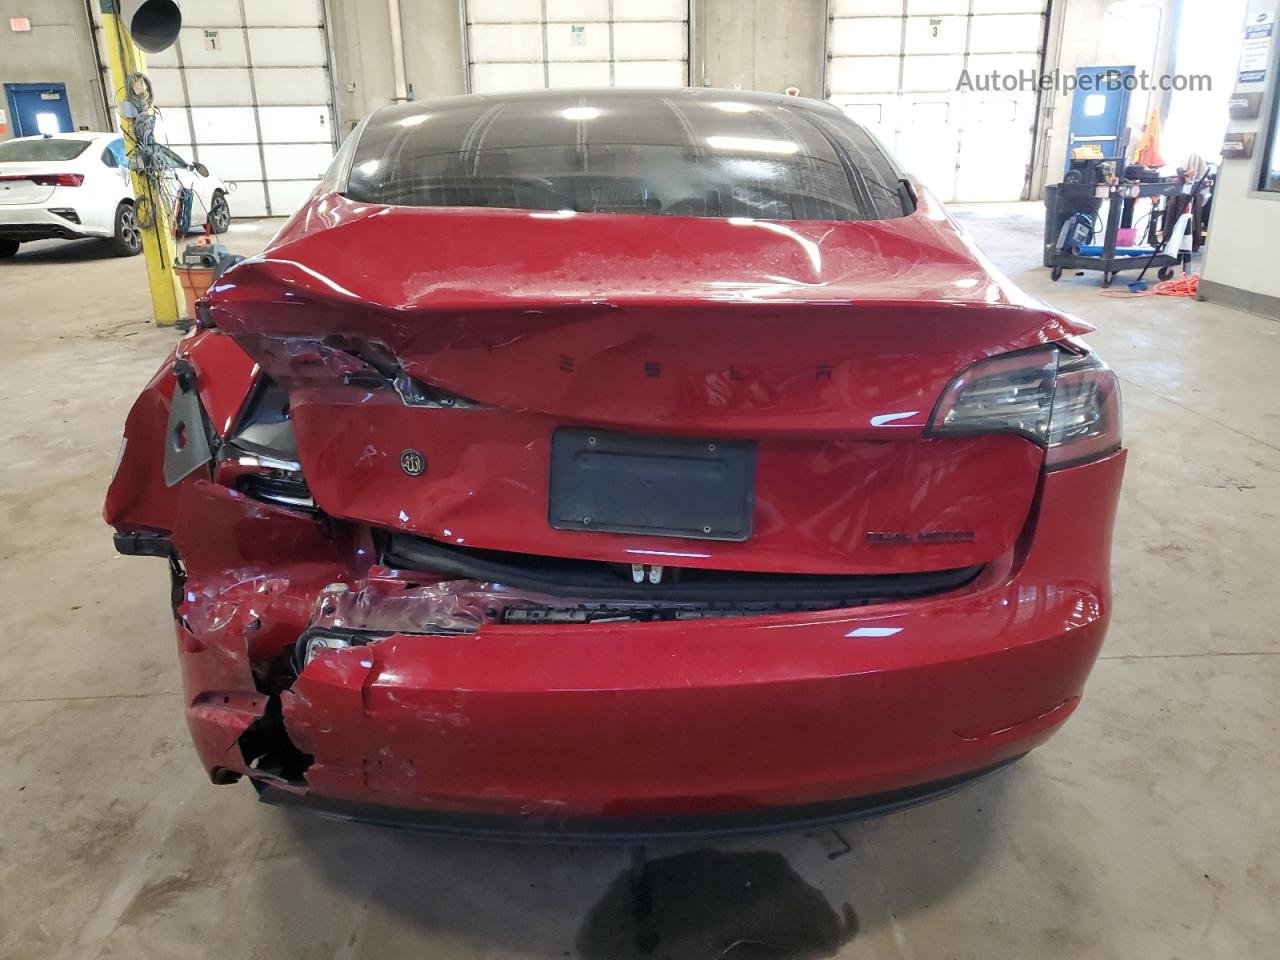 2019 Tesla Model 3  Красный vin: 5YJ3E1EA2KF428131